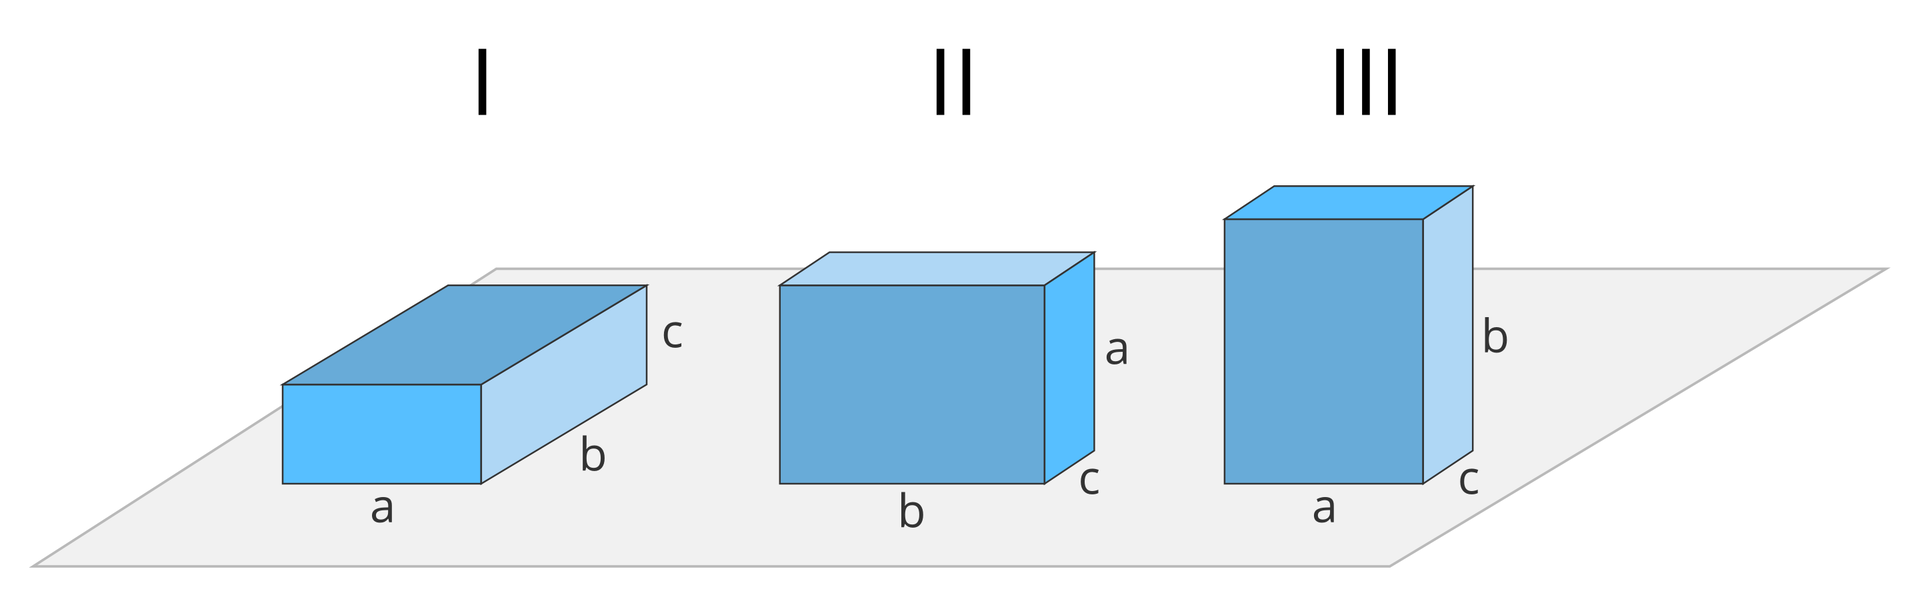 Ilustracja przedstawia trzy identyczne niebieskie prostopadłościany, leżące na szarej płaszczyźnie. Prostopadłościany są ułożone w rzędzie obok siebie, oznaczone kolejno od lewej cyframi rzymskimi „I”, „II”, „III”. Krawędzie prostopadłościanów o różnej długości oznaczone są literami „a, b, c”; krawędź „c” jest najkrótsza, krawędź „b” jest najdłuższa. Pierwszy prostopadłościan po lewej ułożony na boku o największej powierzchni, a więc na boku o powierzchni „a” razy „b”. Drugi ułożony na boku „b” razy „c”. Trzeci ułożony na boku o najmniejszej powierzchni, a więc „a” razy „c”.